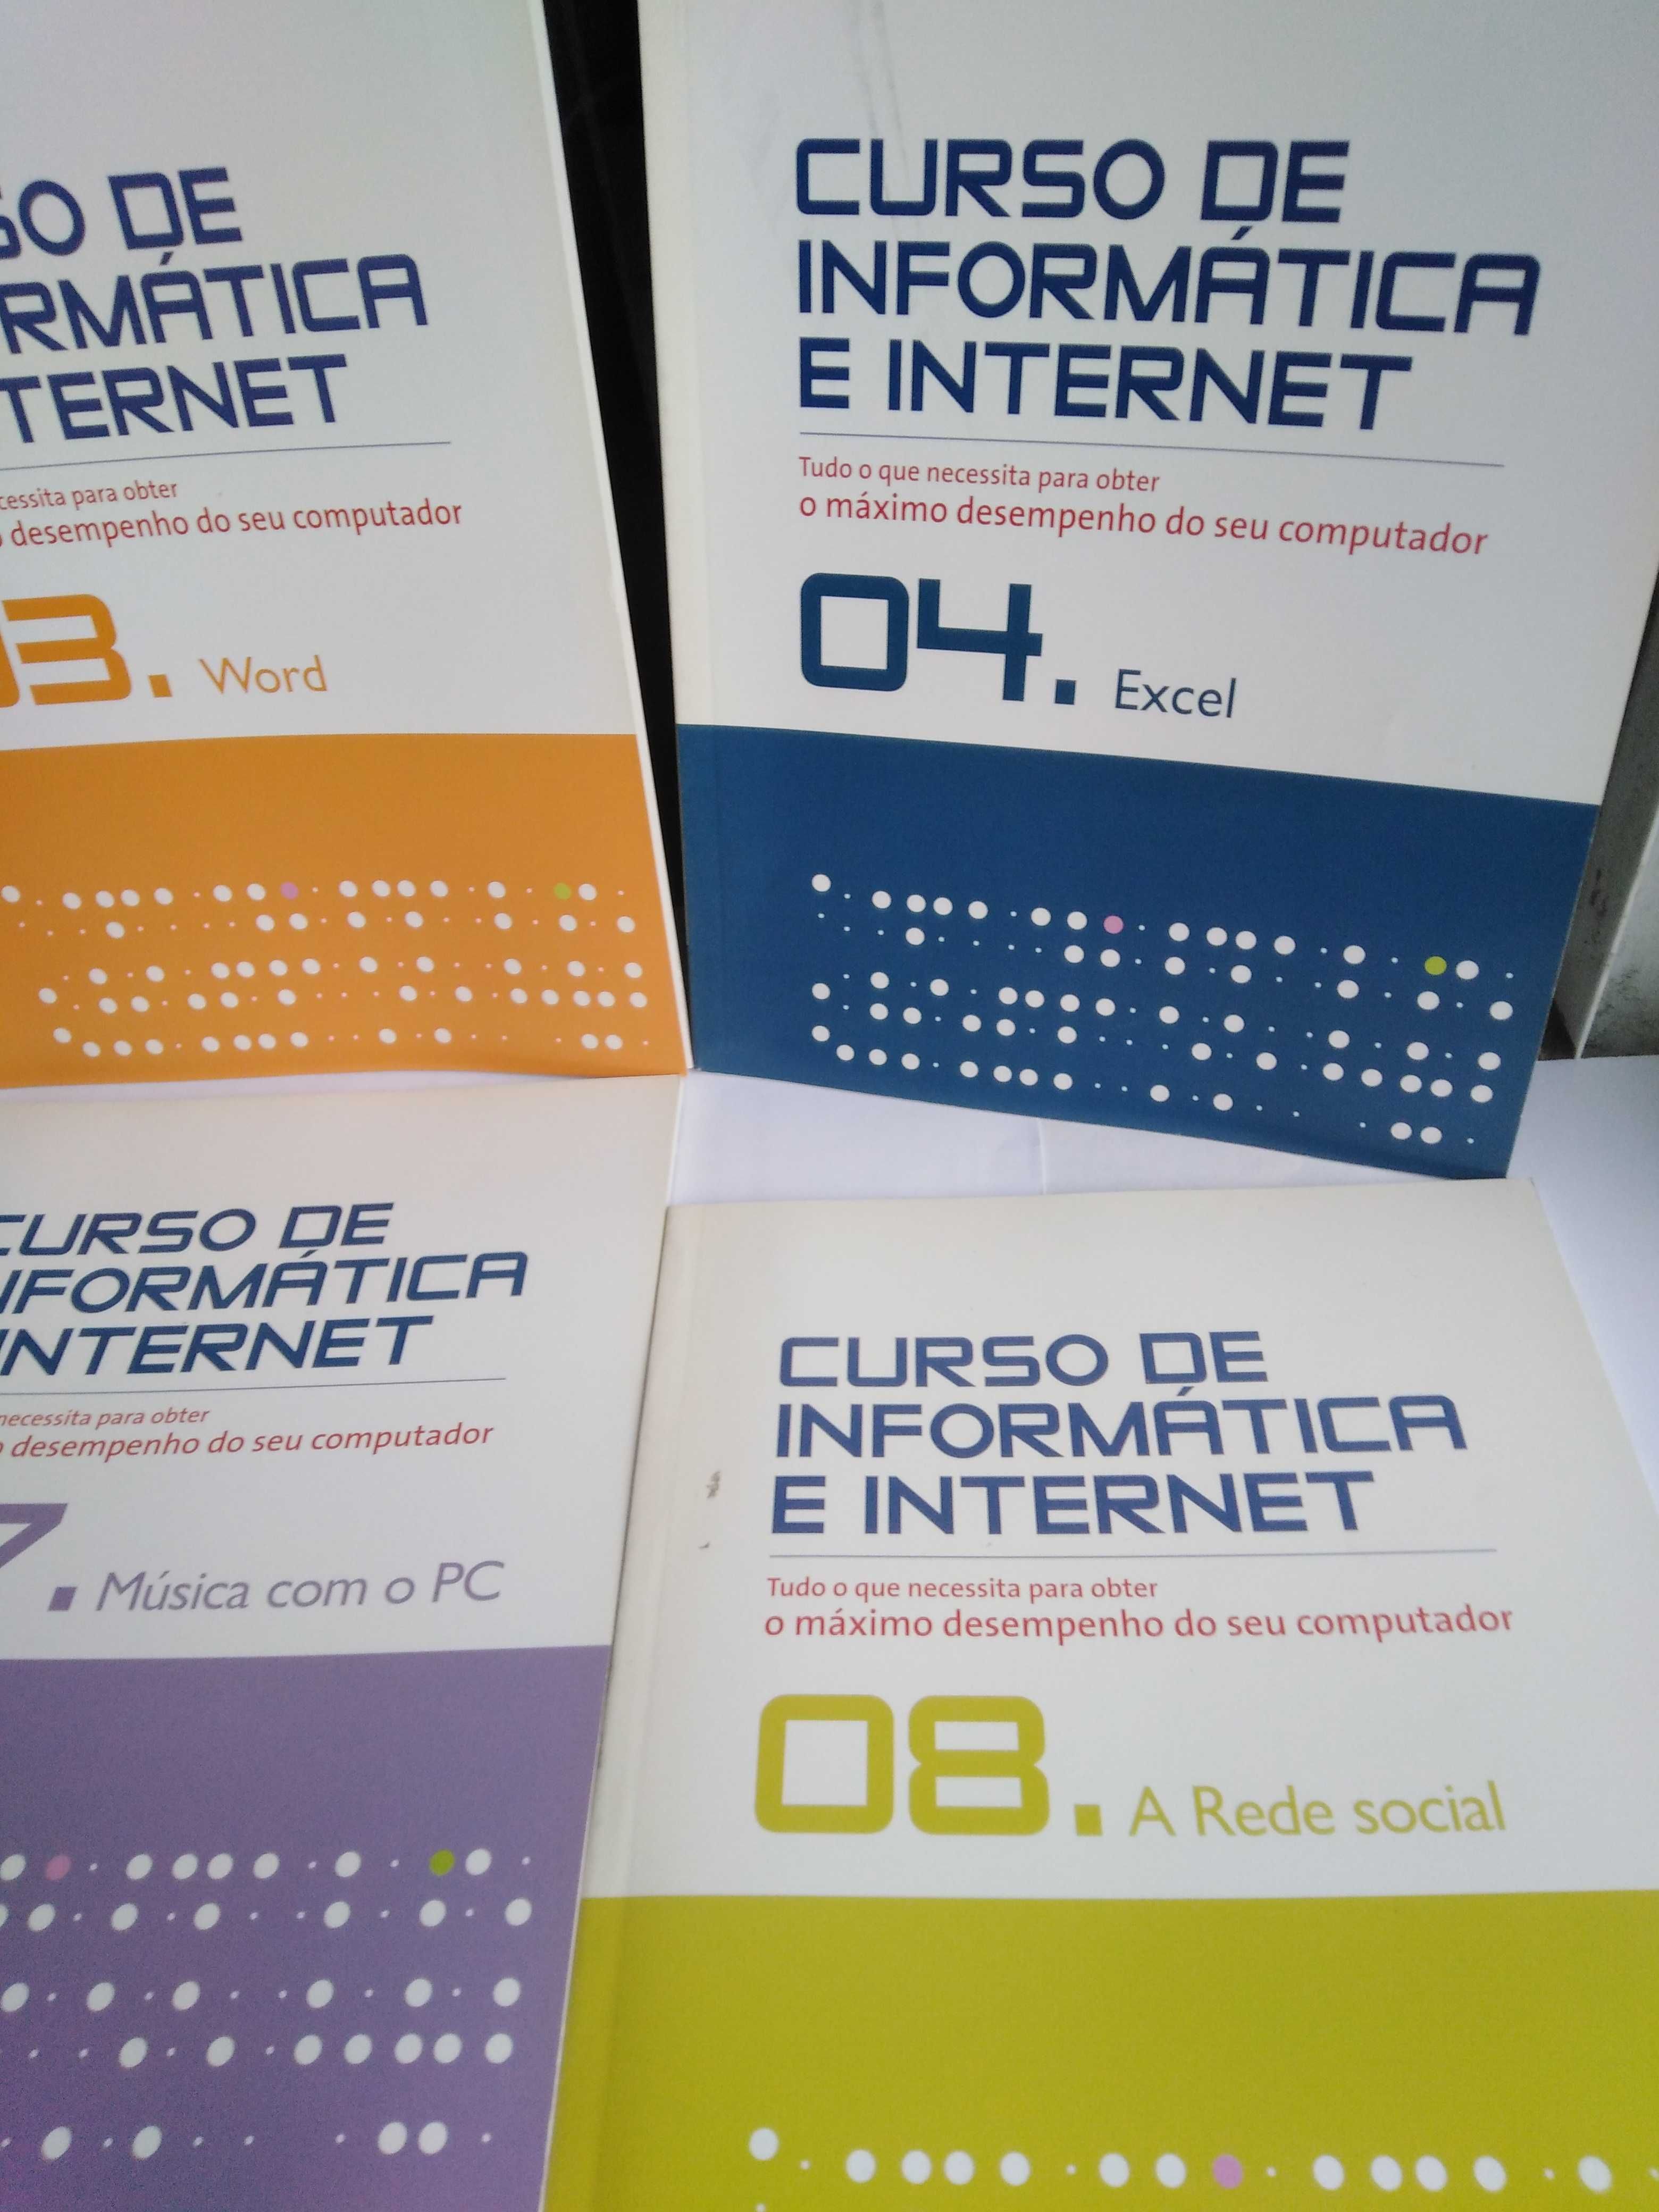 Curso de informatica e internet completo com 8 livros + 32 Cds.